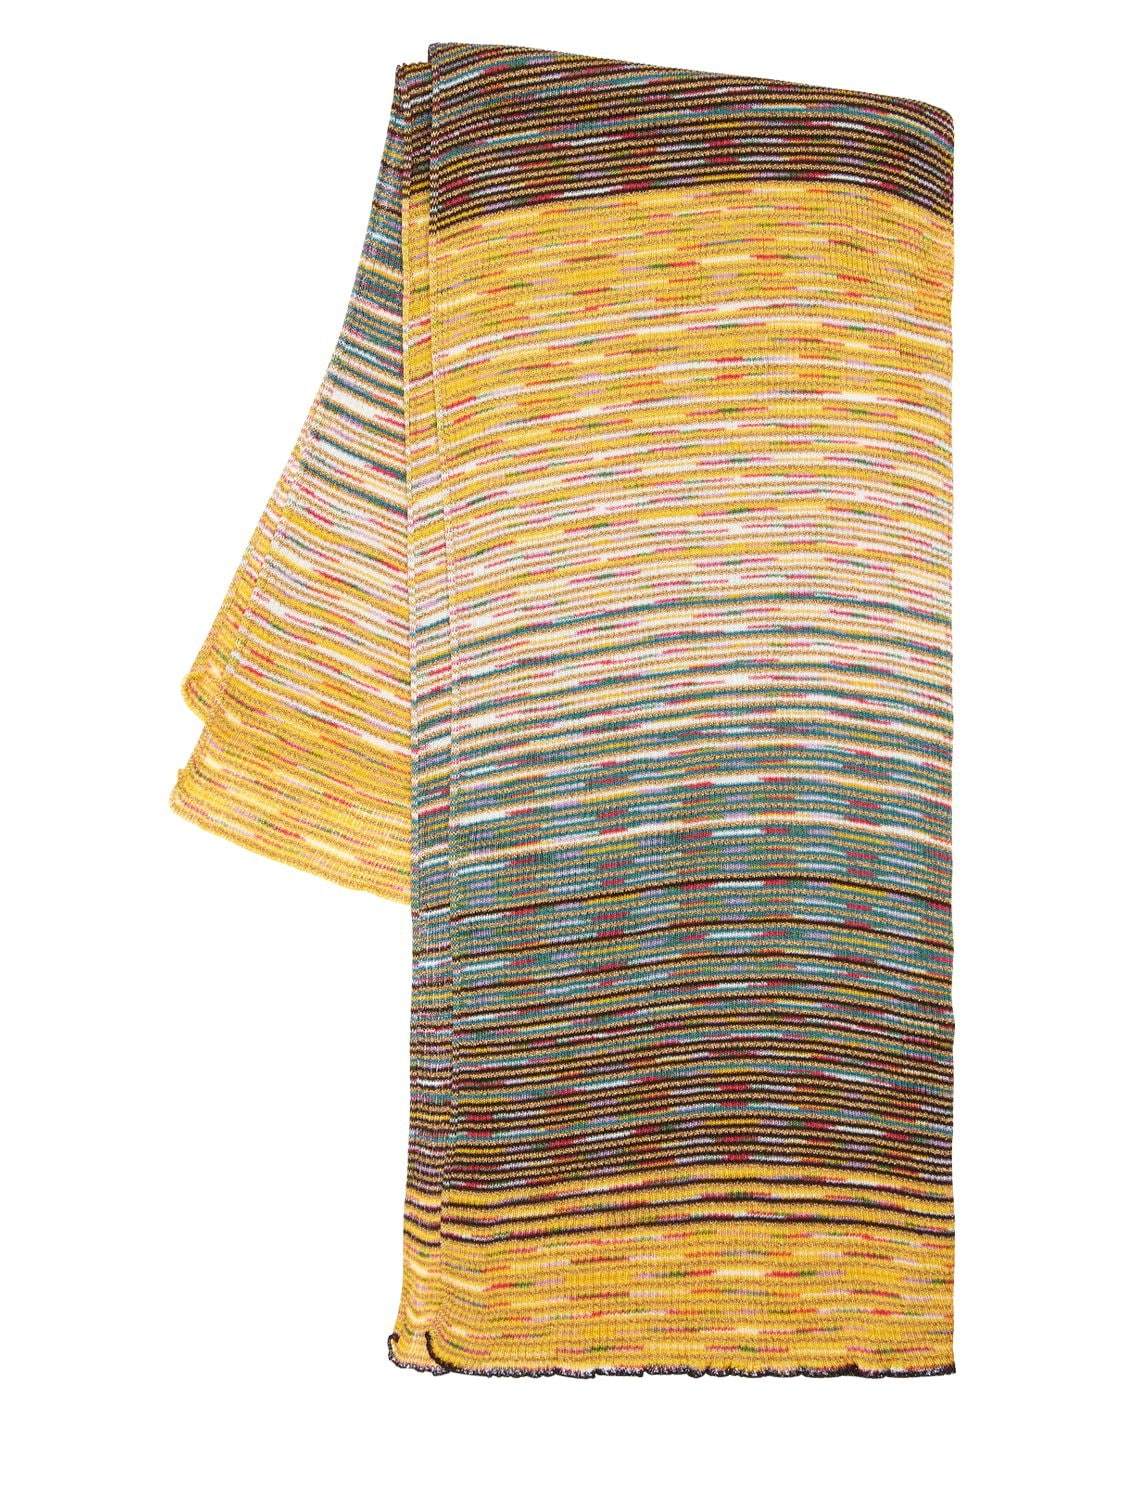 MISSONI 黏胶纤维混纺金银丝披肩,72I5L2003-MG2